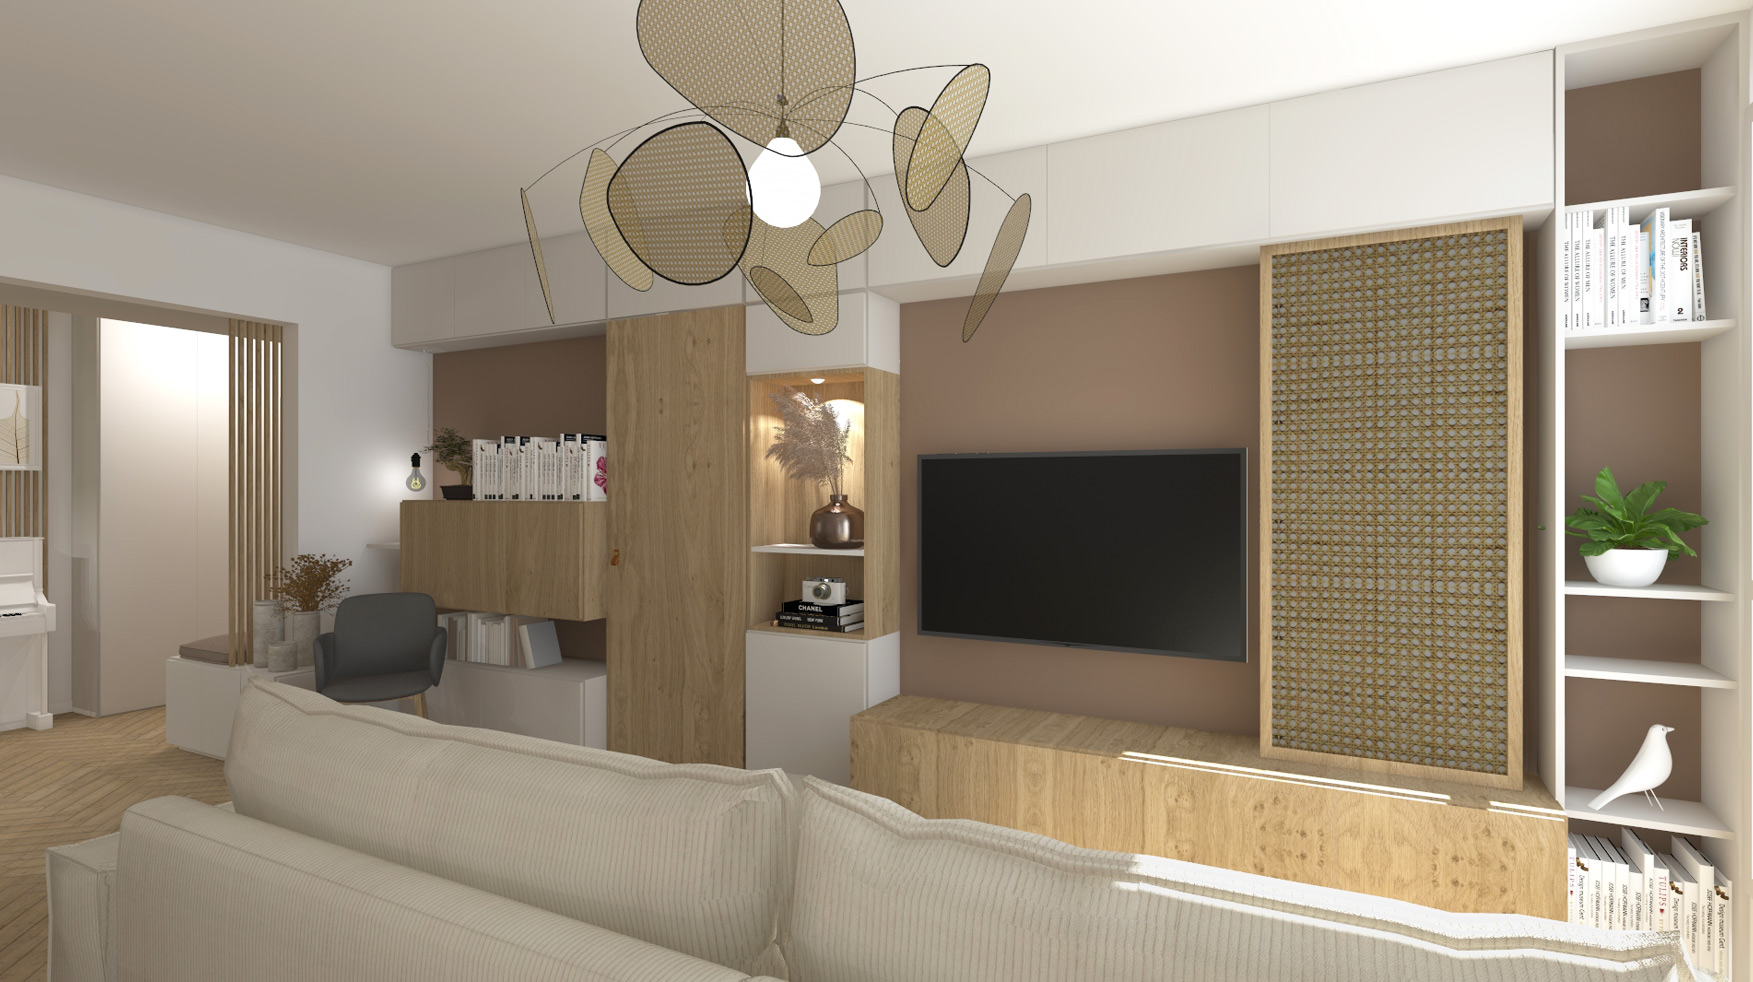 KLR : Rénovation intérieure d’un appartement à Paris, aménagement d’un séjour, salon, salle à manger.